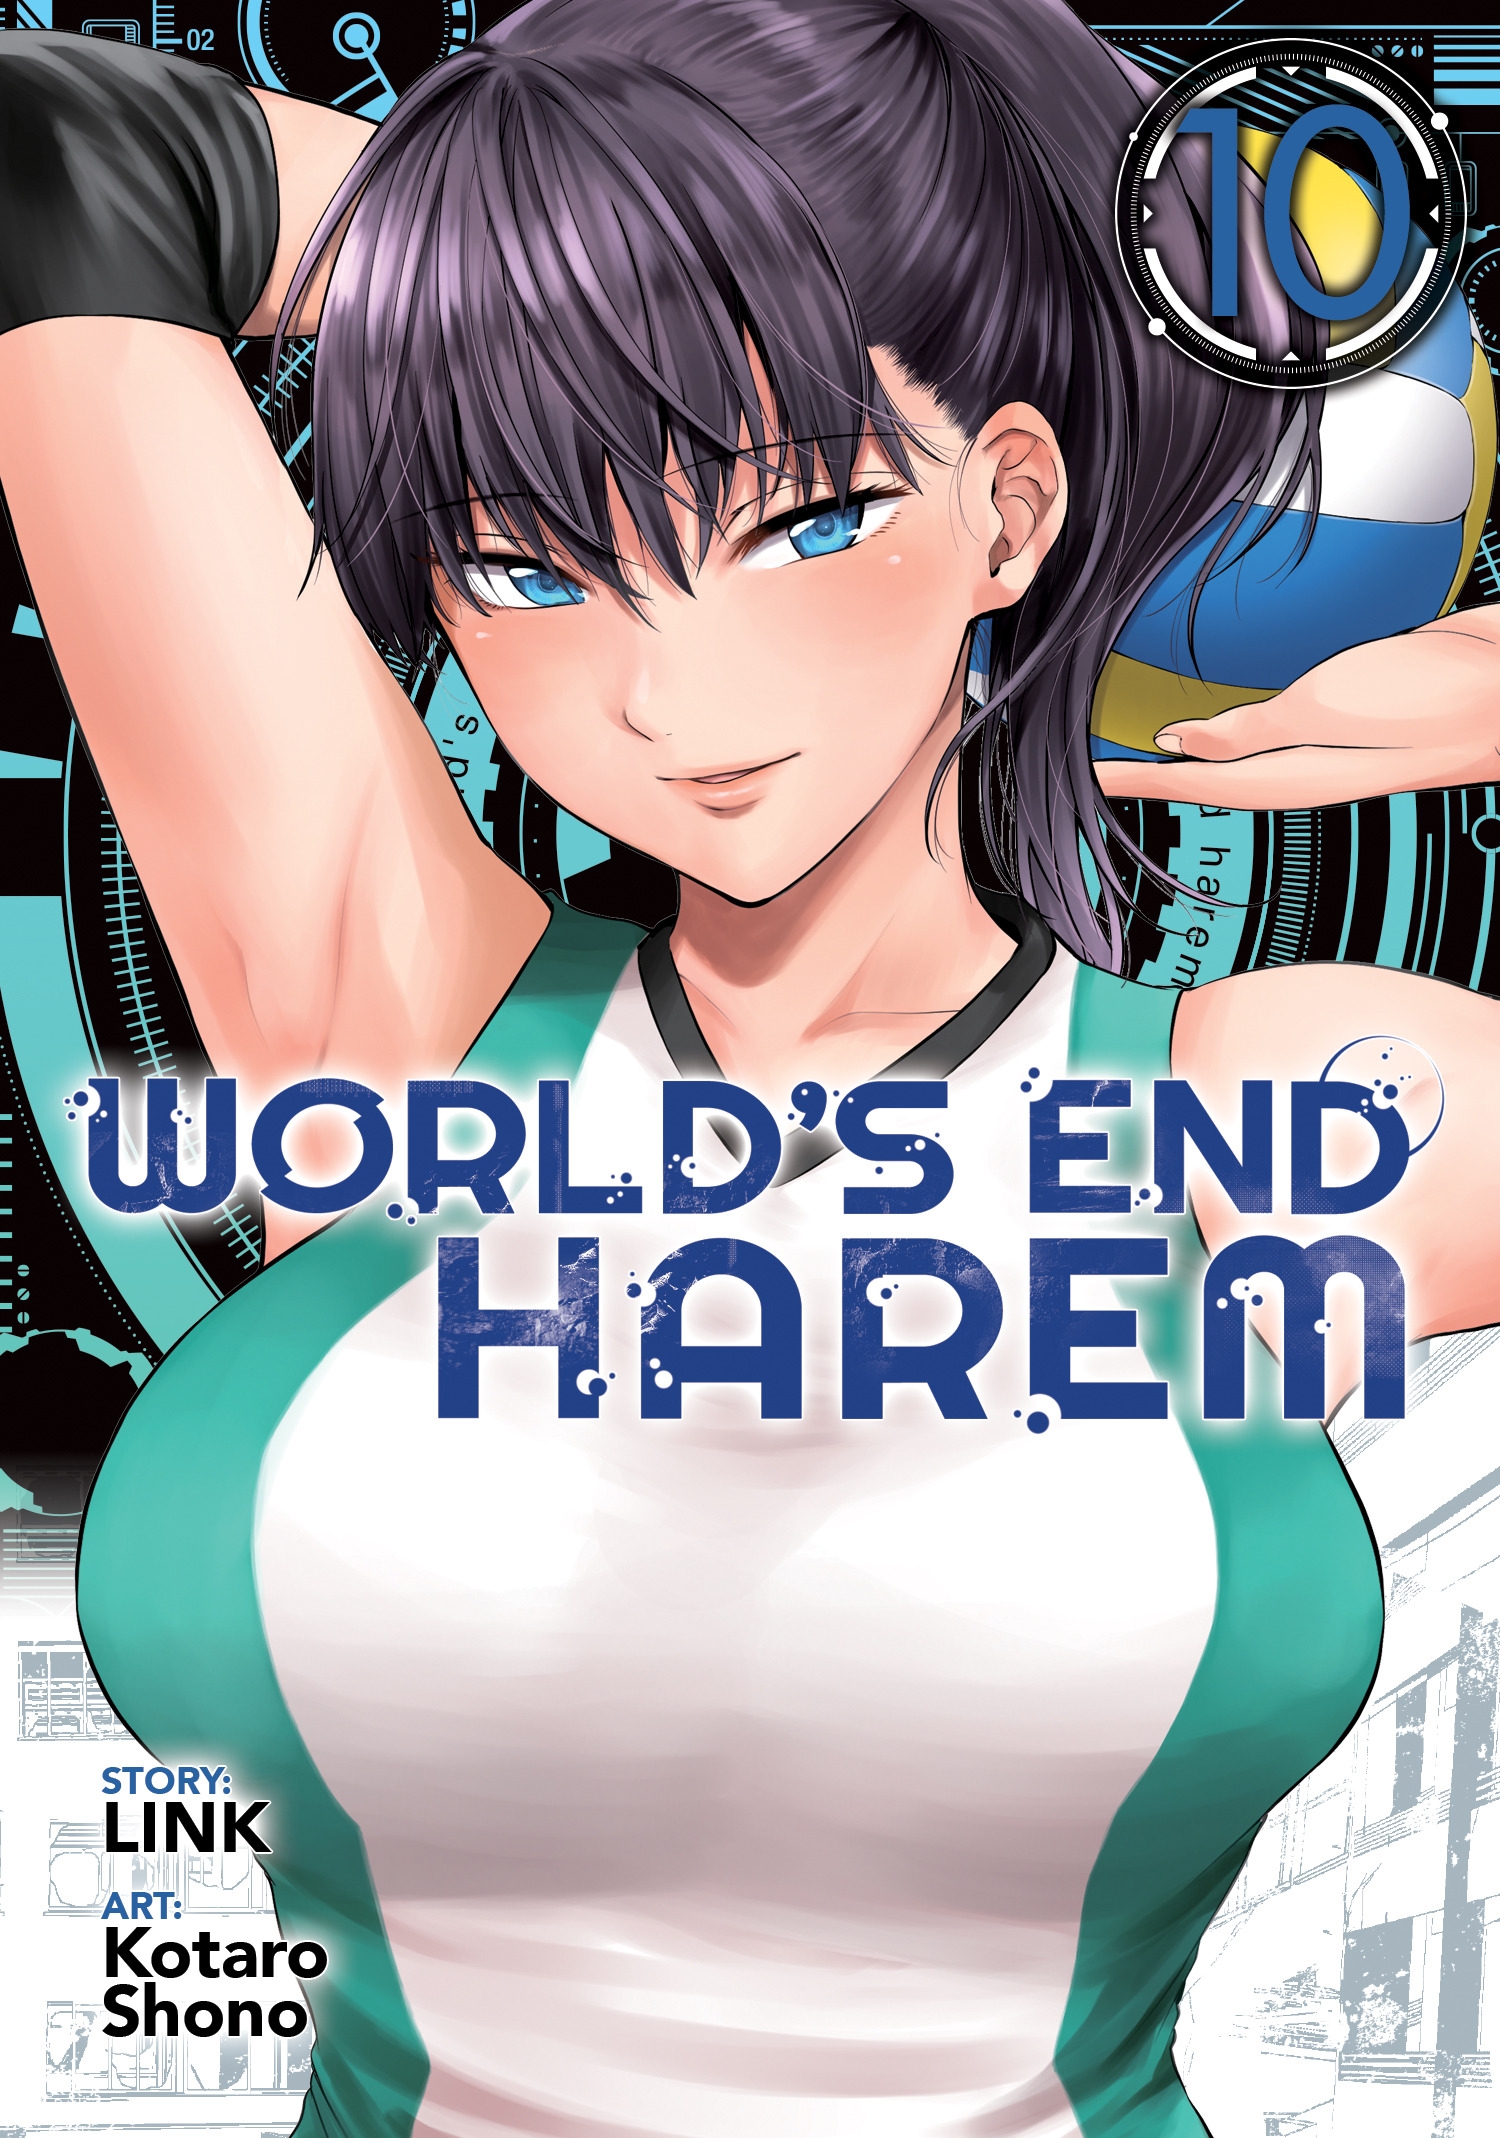 World's End Harem Vol. 16 - After World by Link: 9798888430774